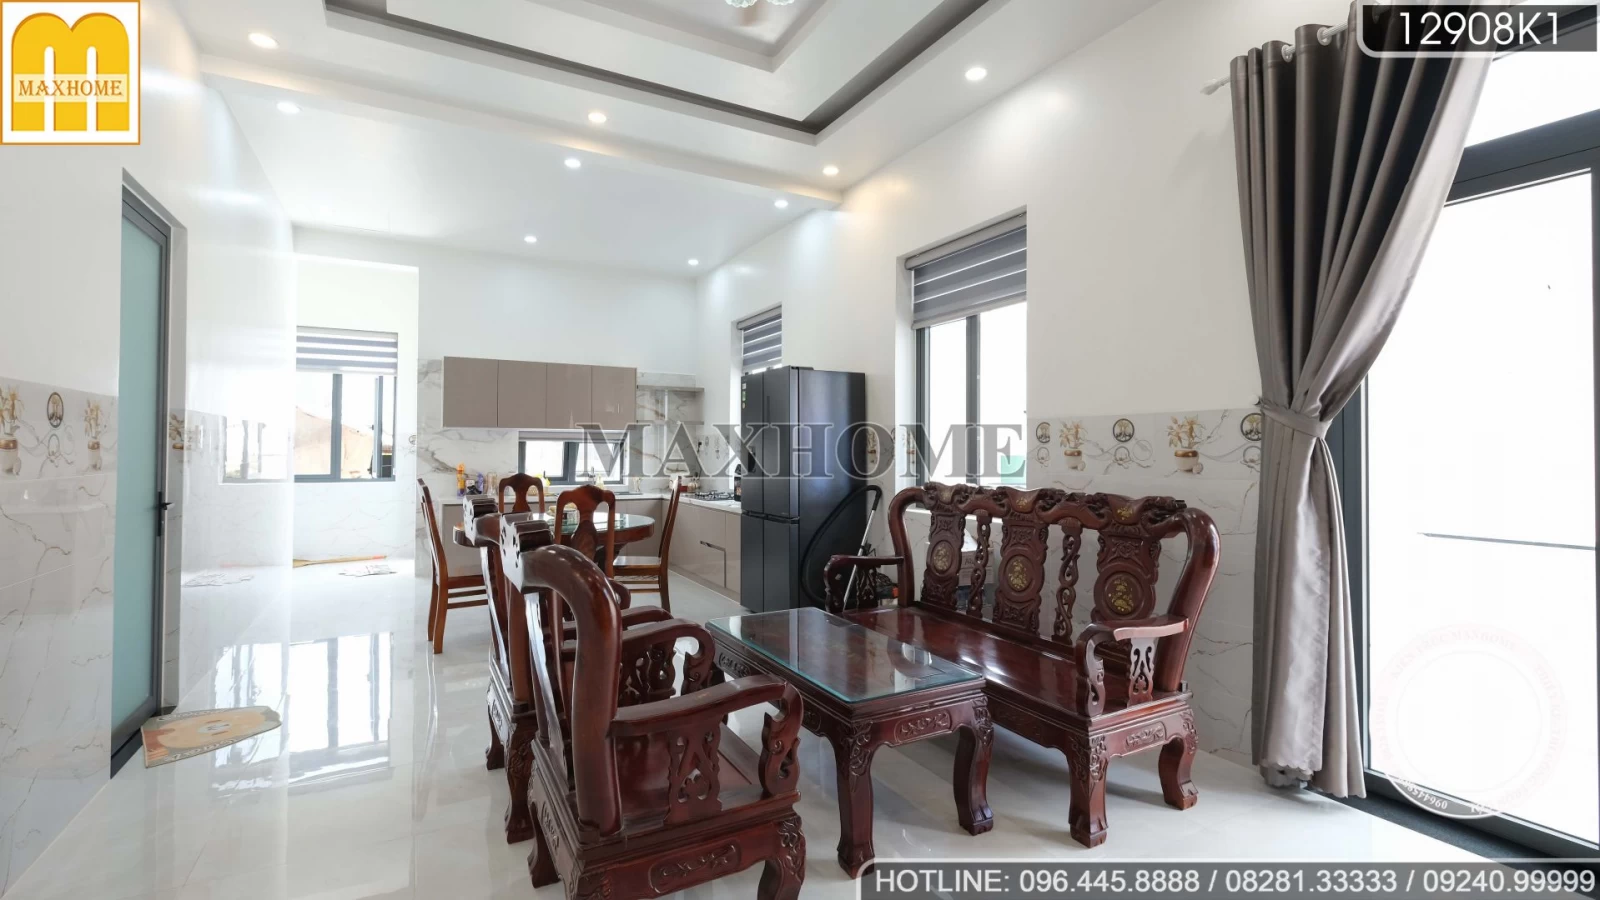 Thực tế nội thất hiện đại đẹp tinh tế Maxhome thi công cho nhà mái Thái | MH02368